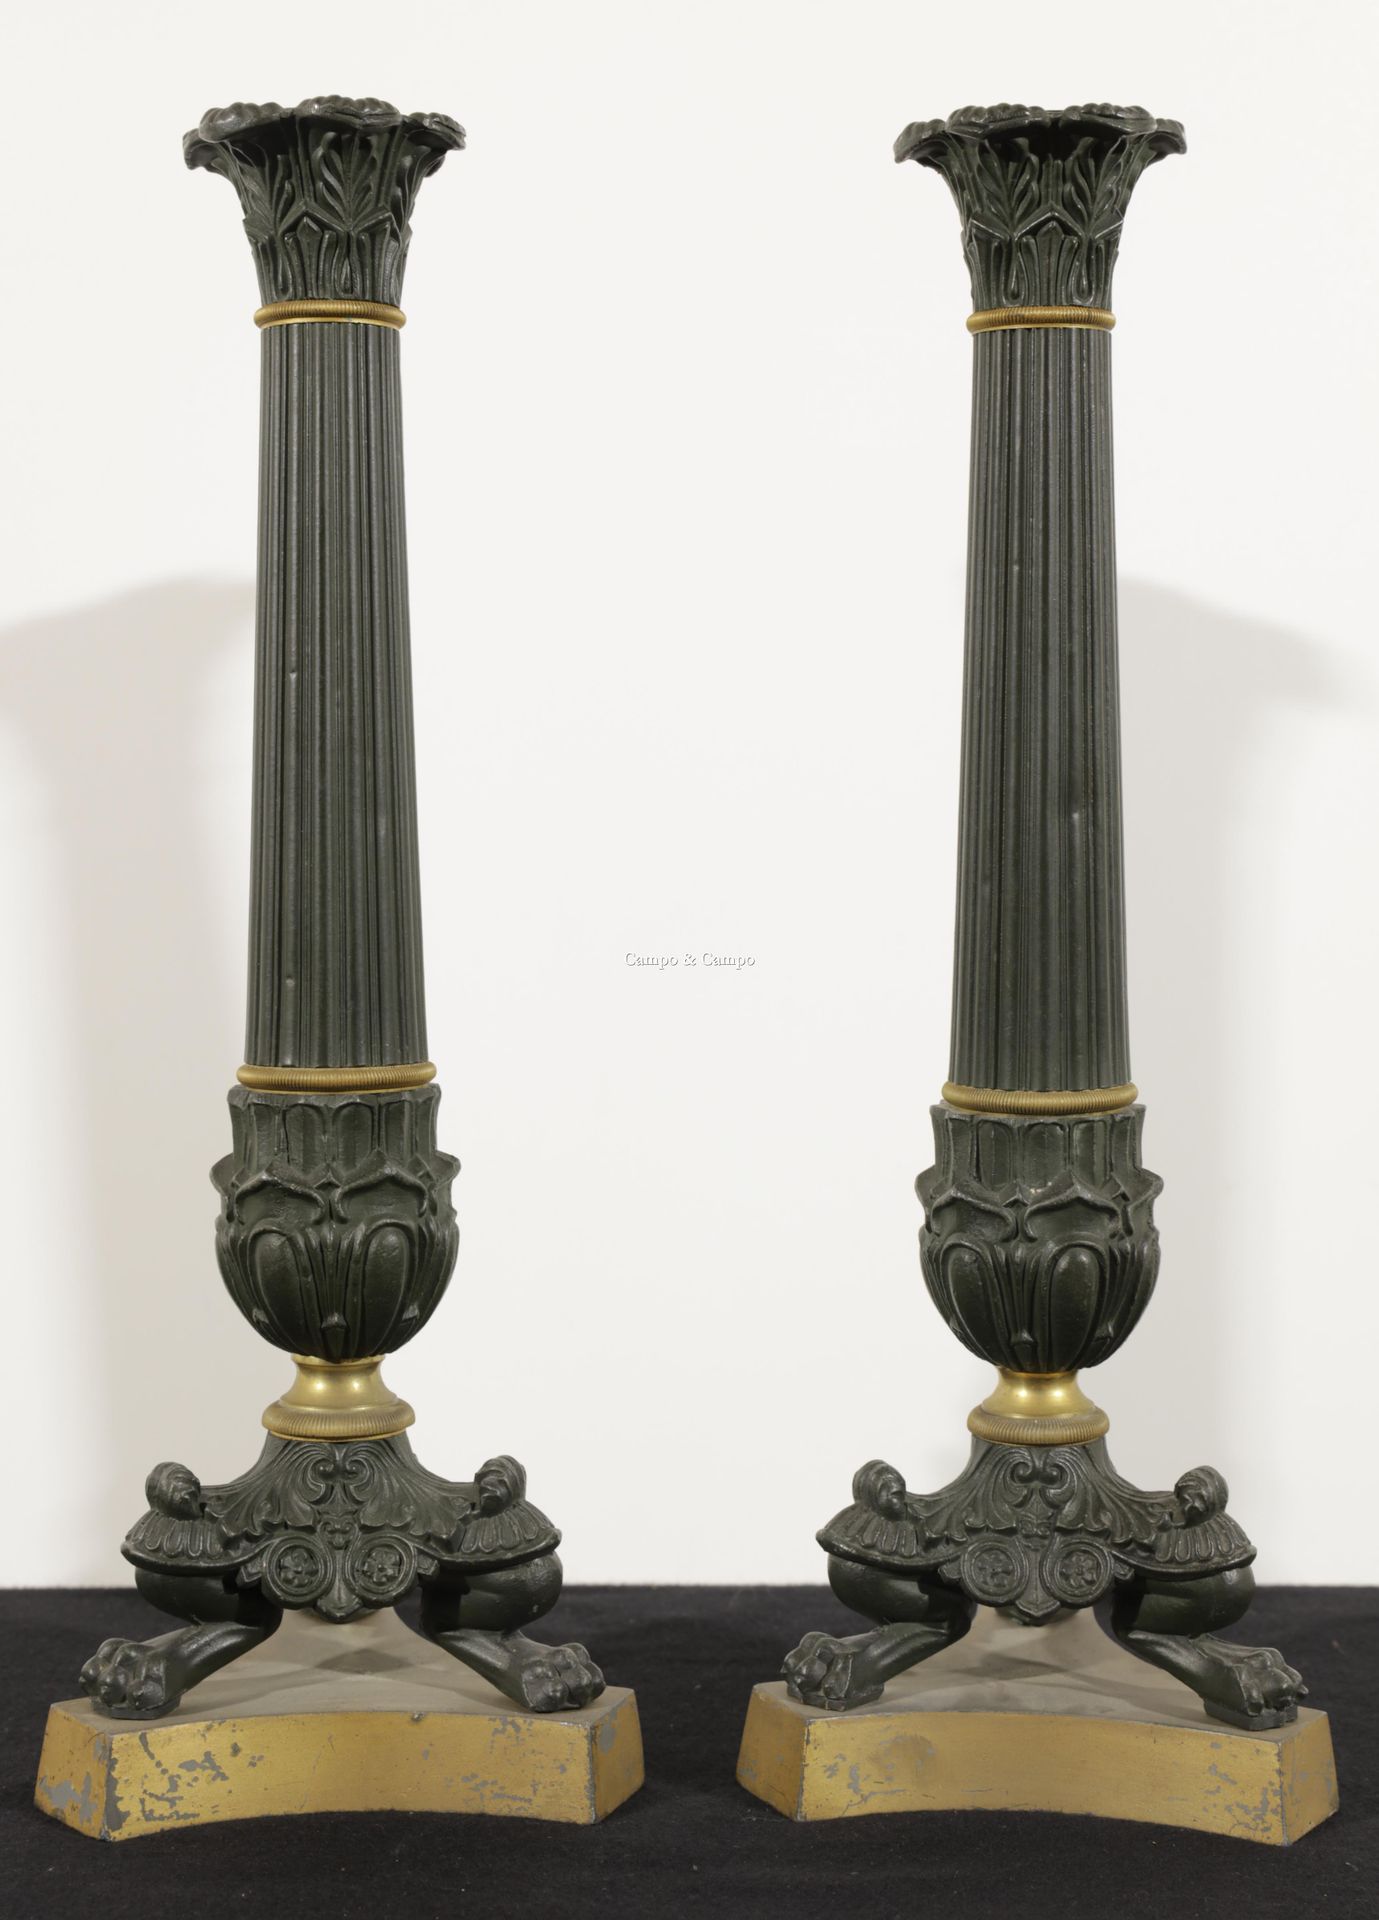 VARIA 一对科林斯壁柱形式的金属和青铜的修复风格烛台
Paar kandelaars in Restauration stijl van metaal en&hellip;